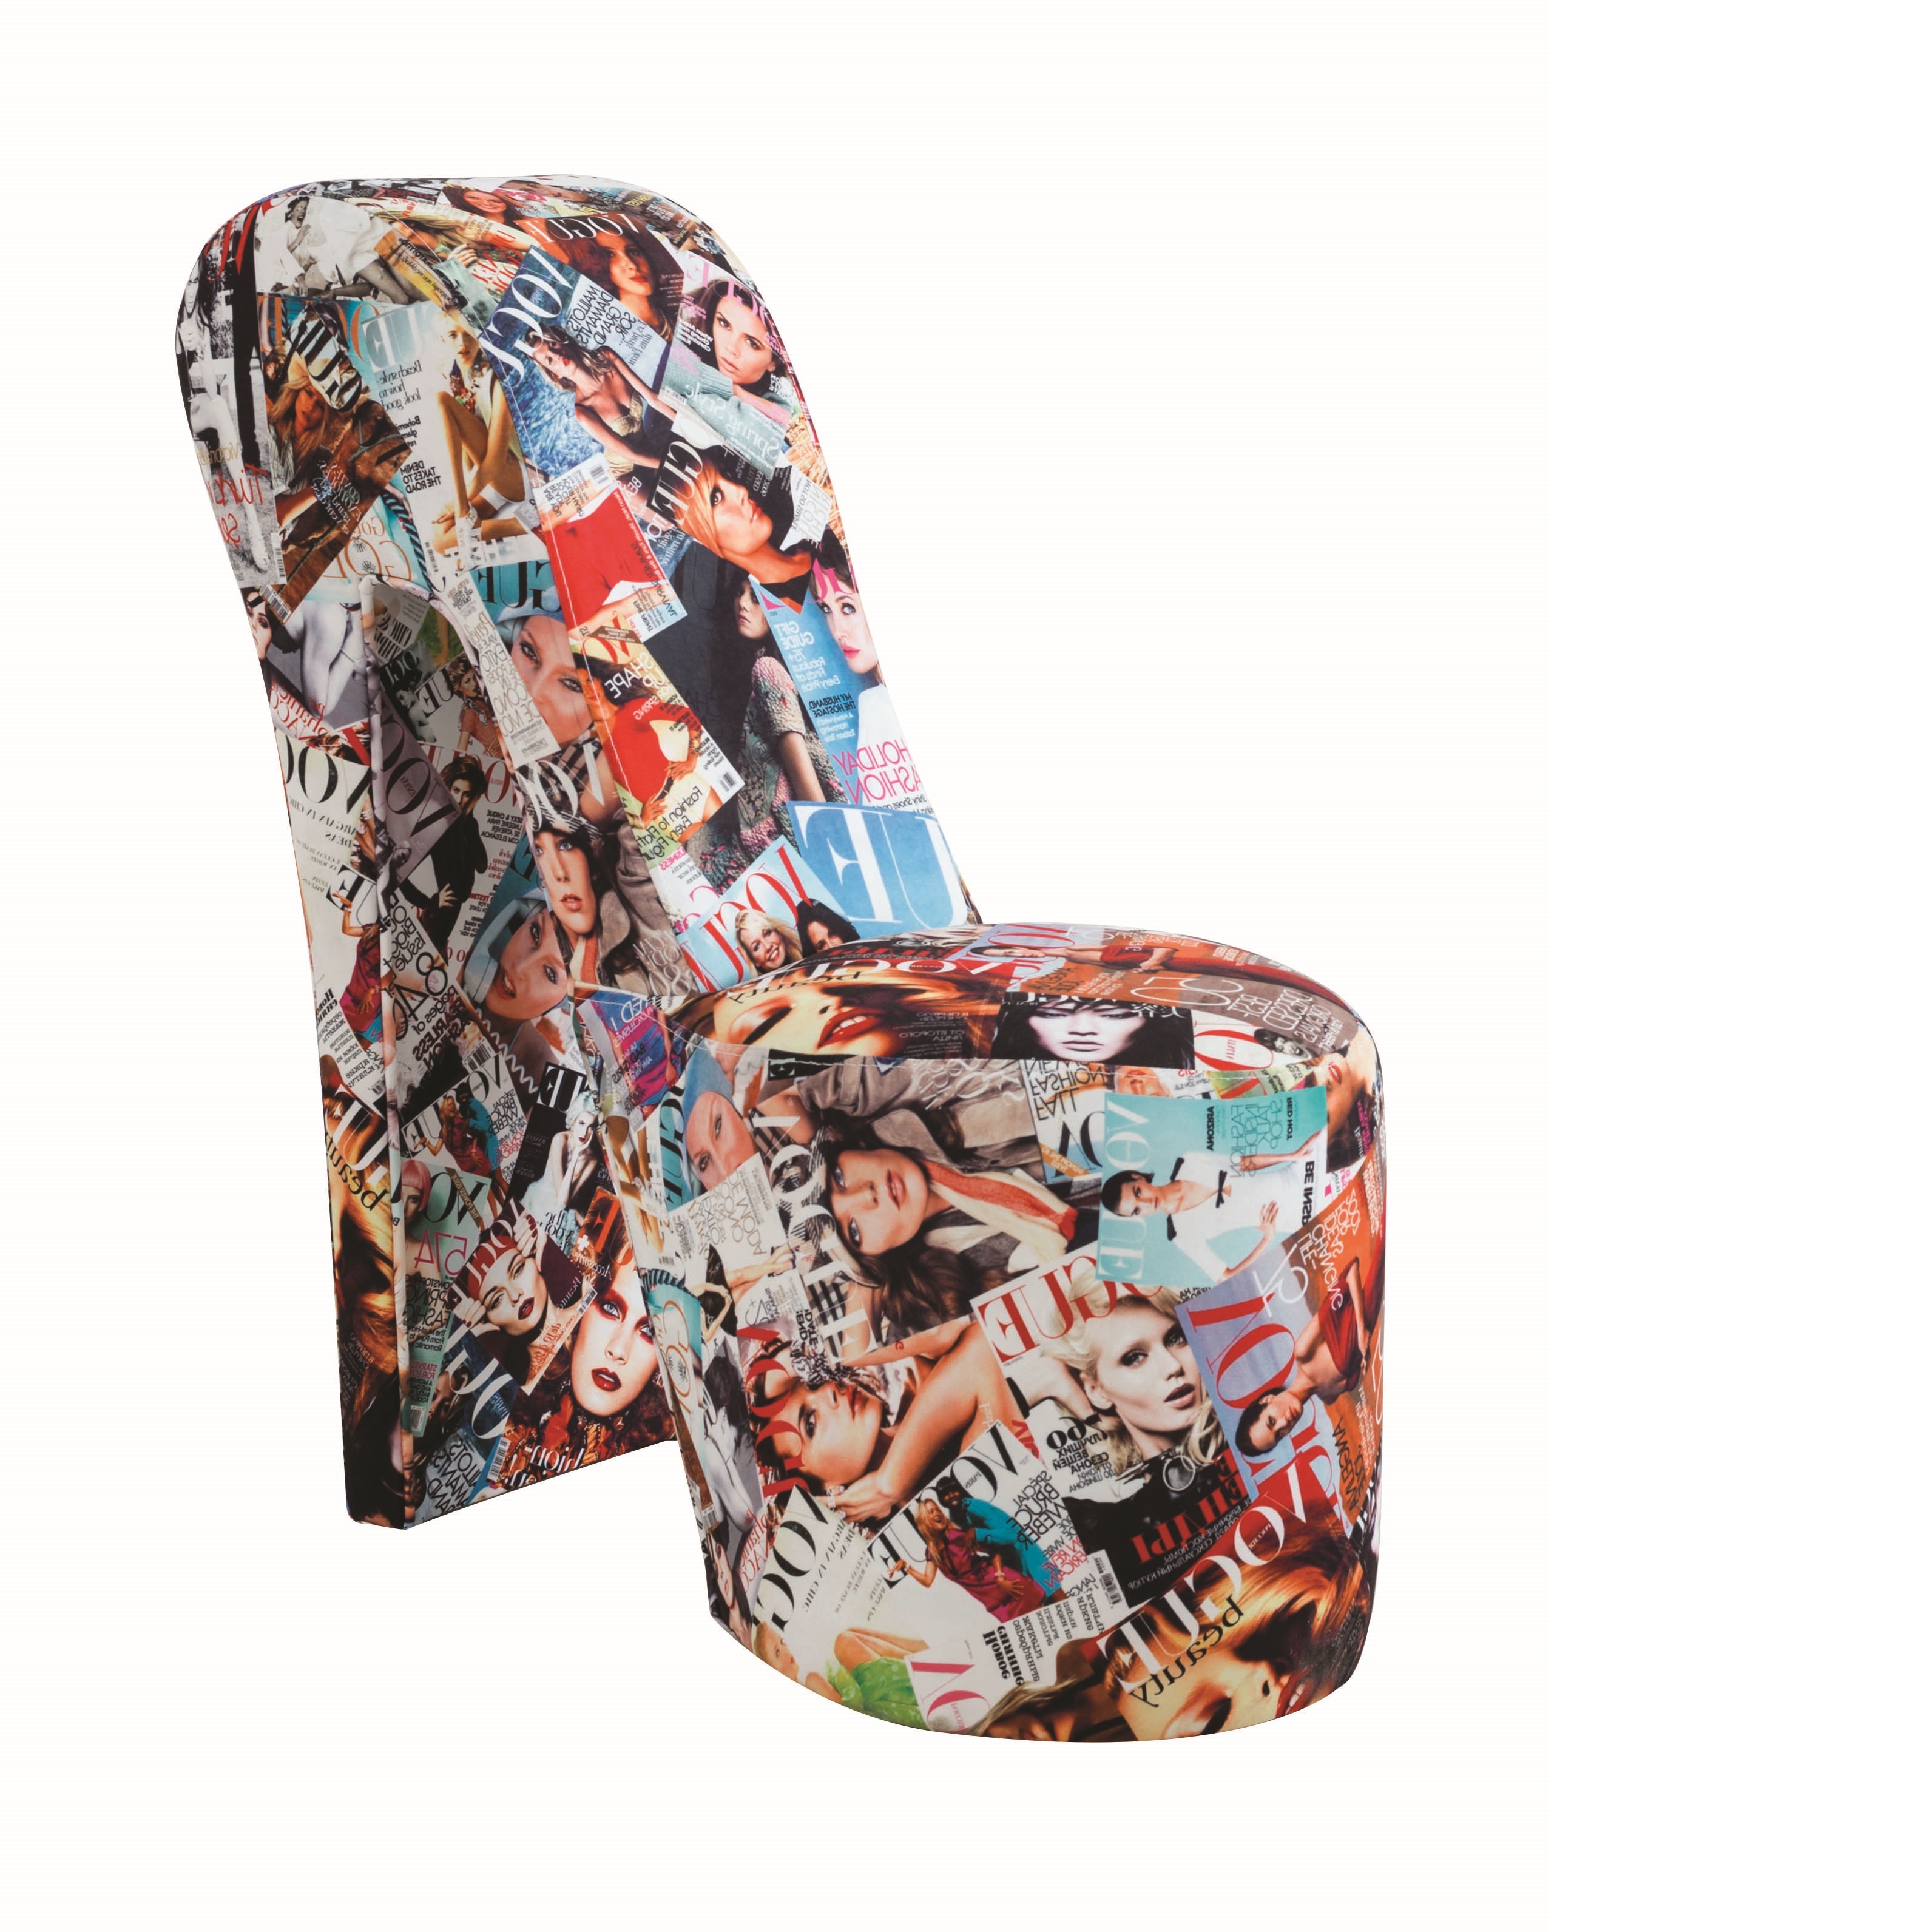 Stiletto Magazine Coloured Print Novelty Chair